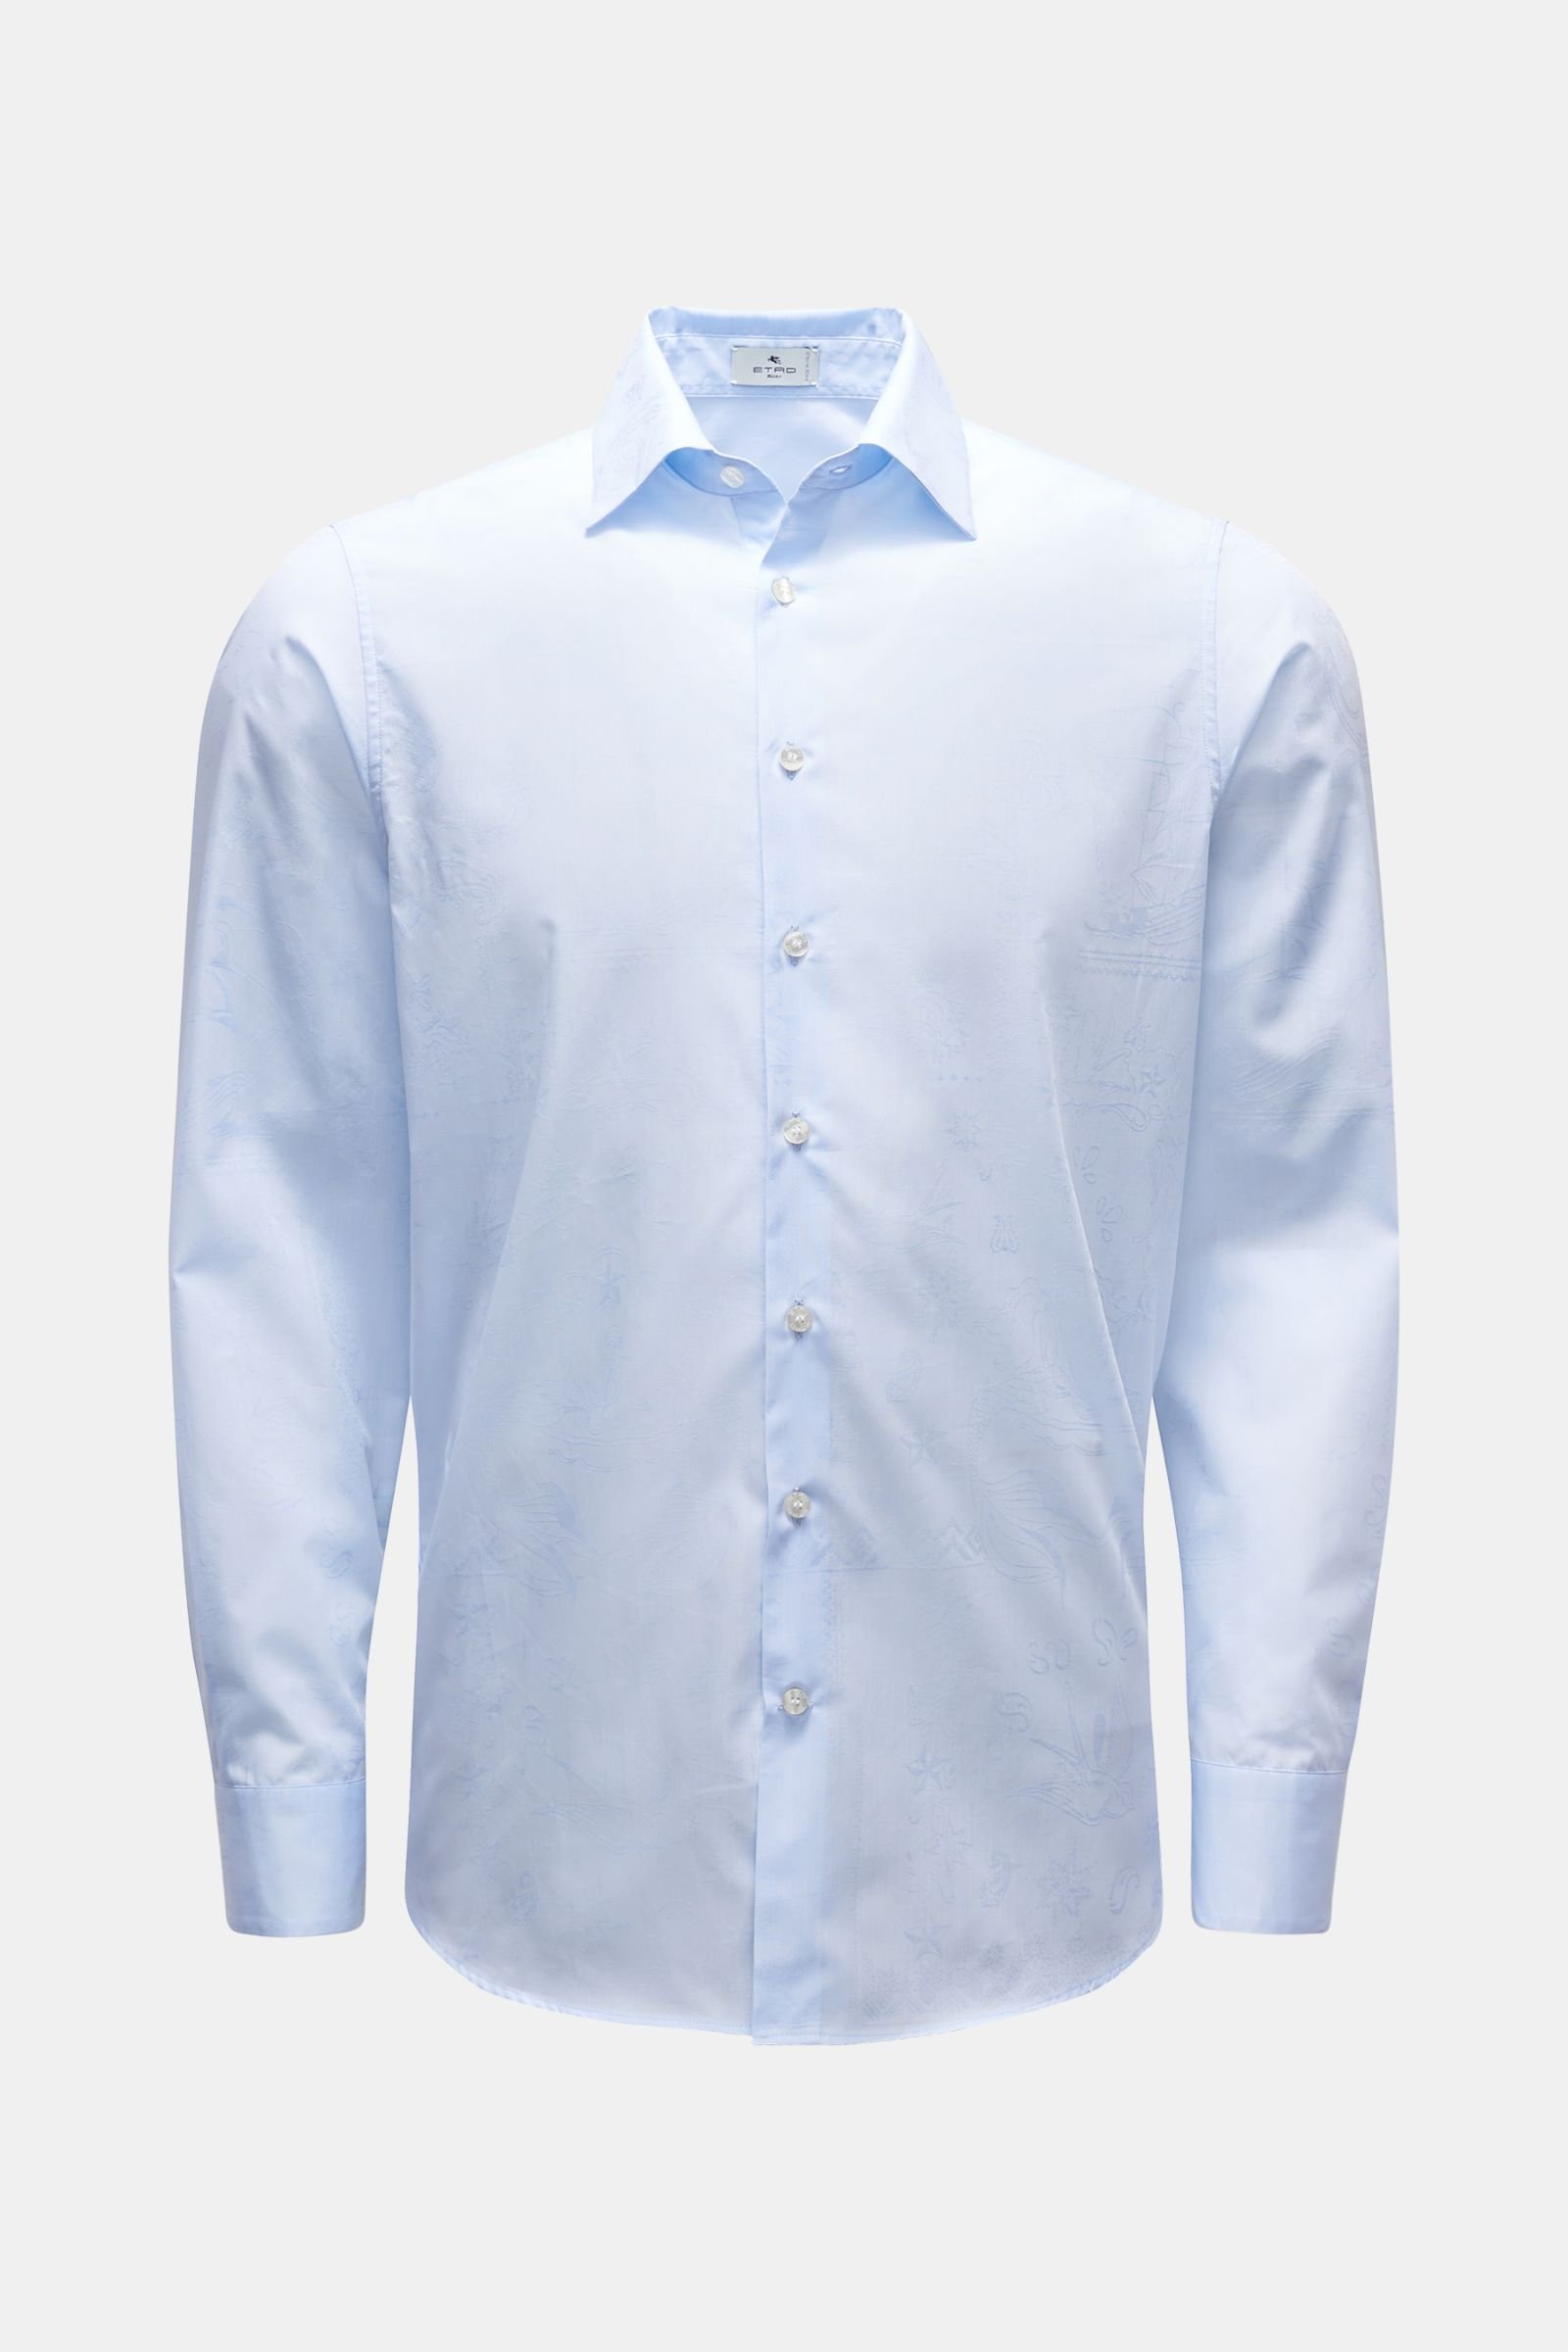 Jacquard shirt light blue